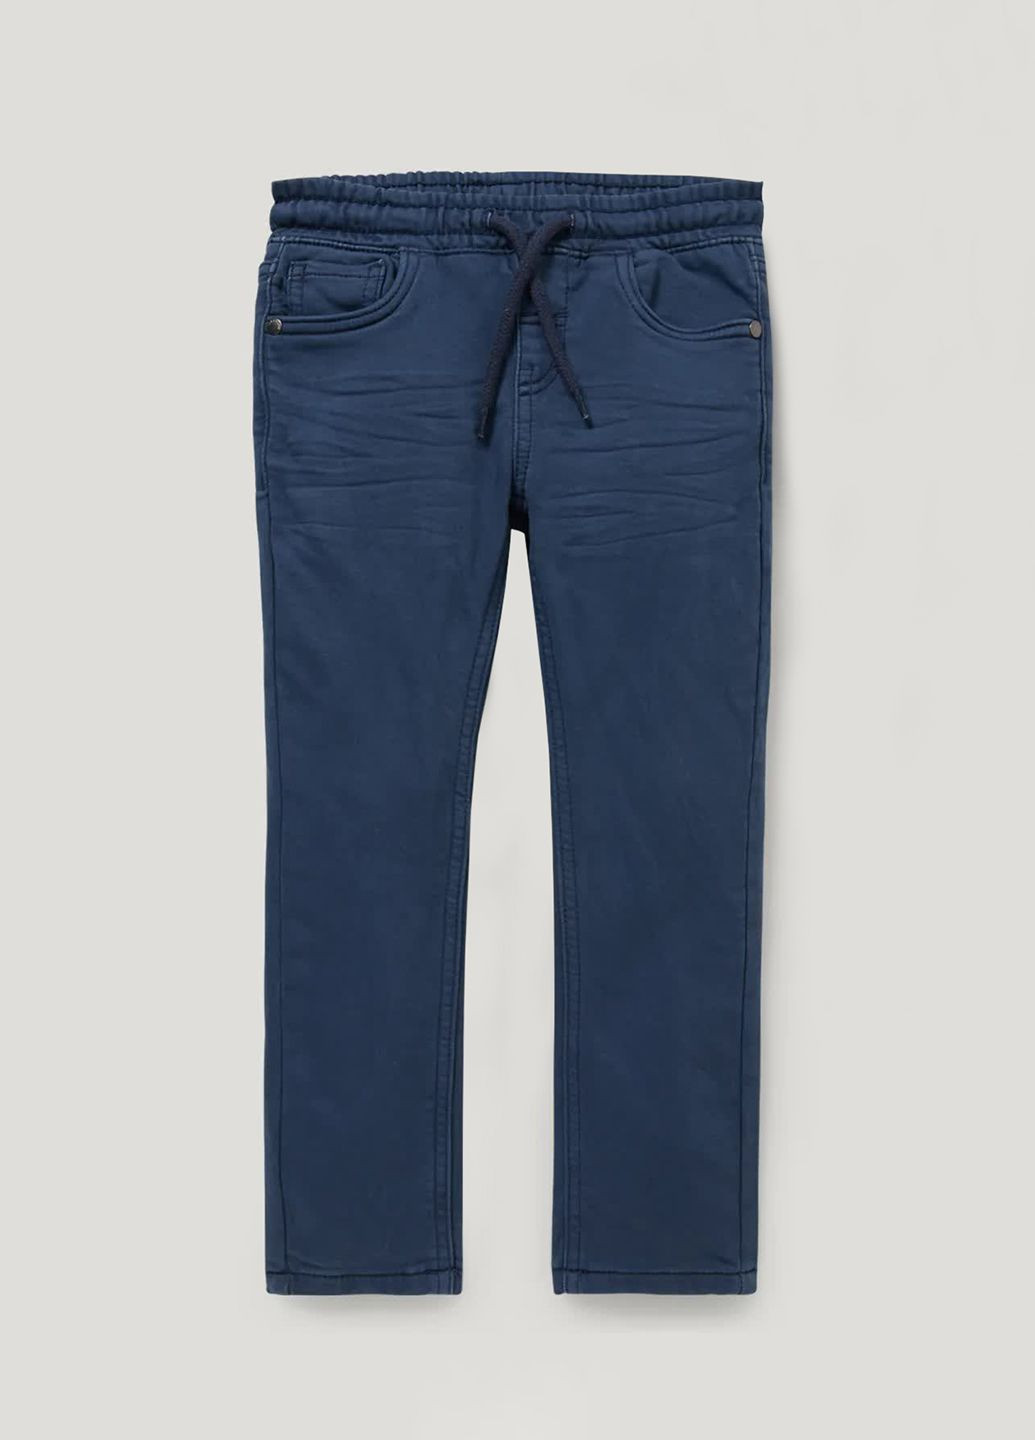 Синие демисезонные джинсы на флисе C&A